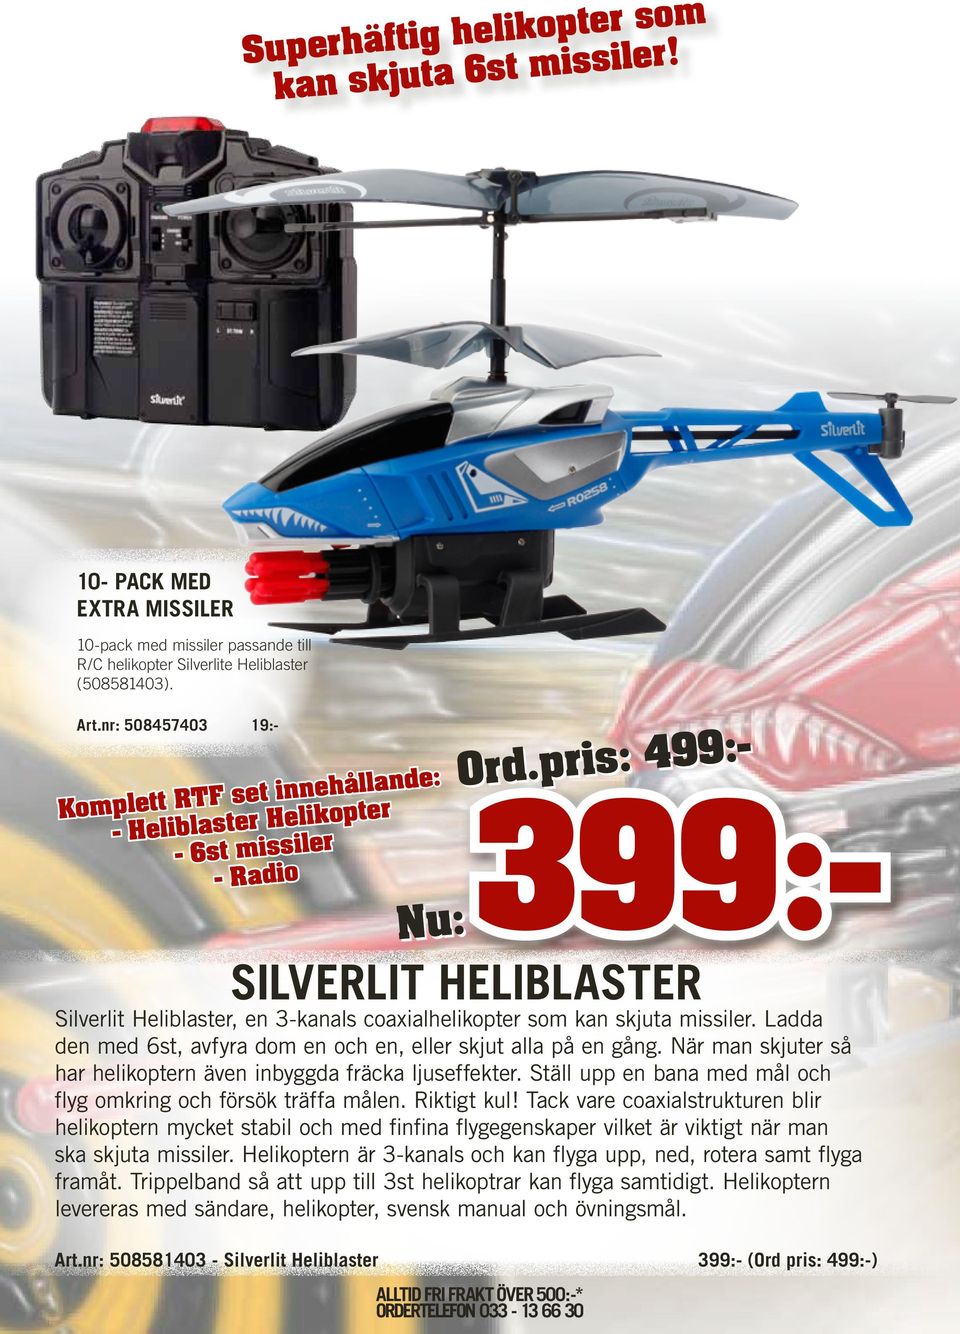 pris: 499:- 399:- SILVERLIT HELIBLASTER Silverlit Heliblaster, en 3-kanals coaxialhelikopter som kan skjuta missiler. Ladda den med 6st, avfyra dom en och en, eller skjut alla på en gång.